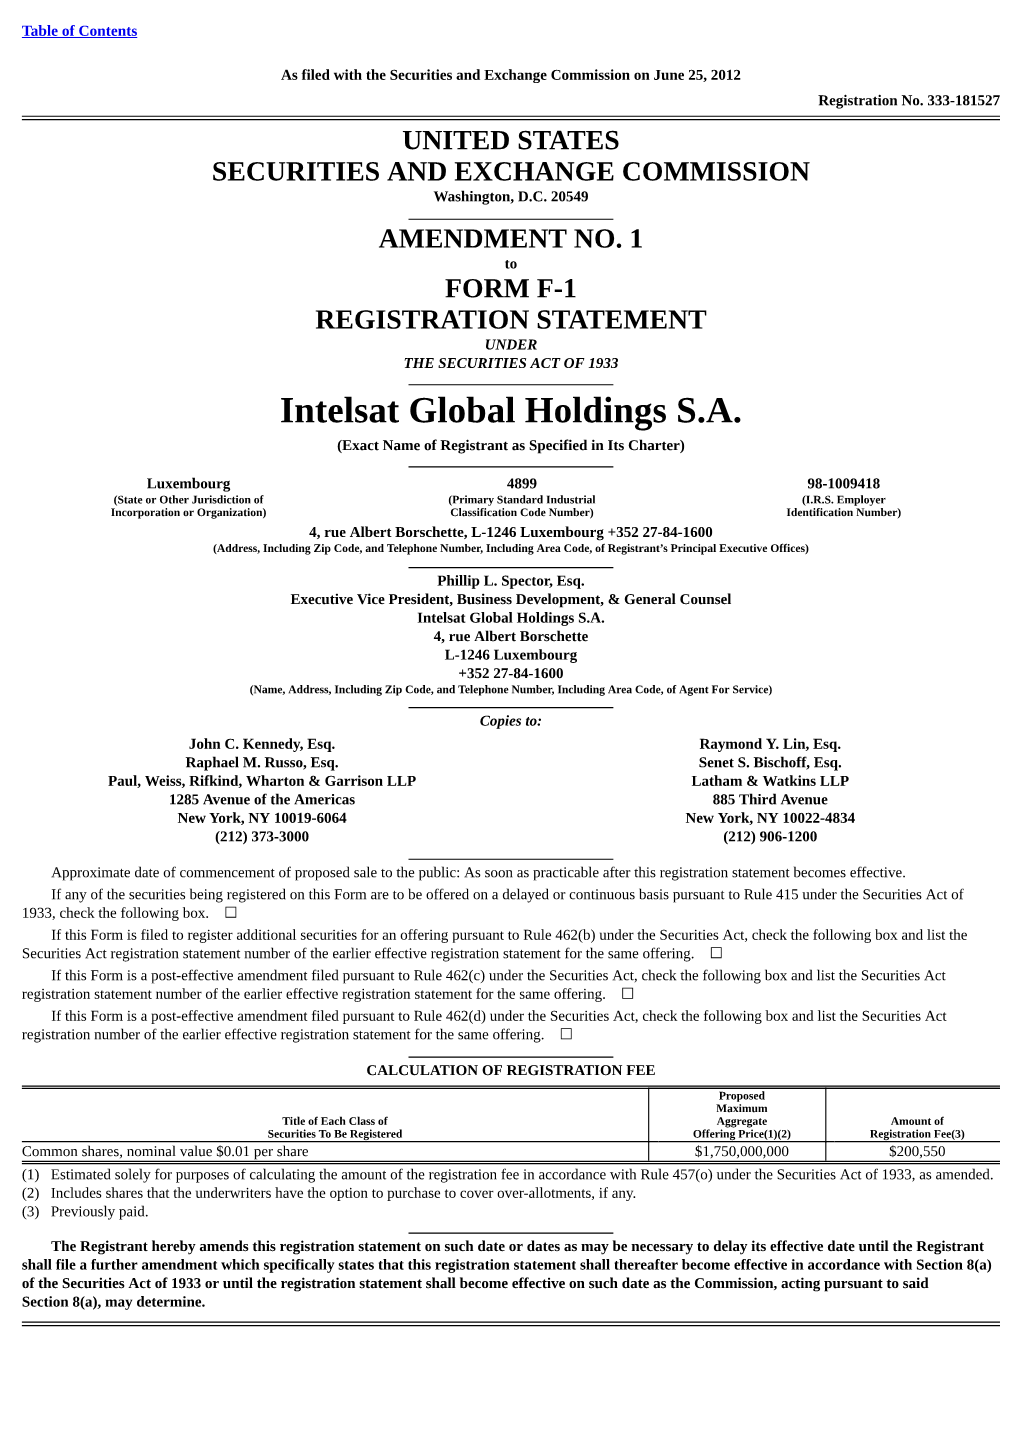 Intelsat Global Holdings SA